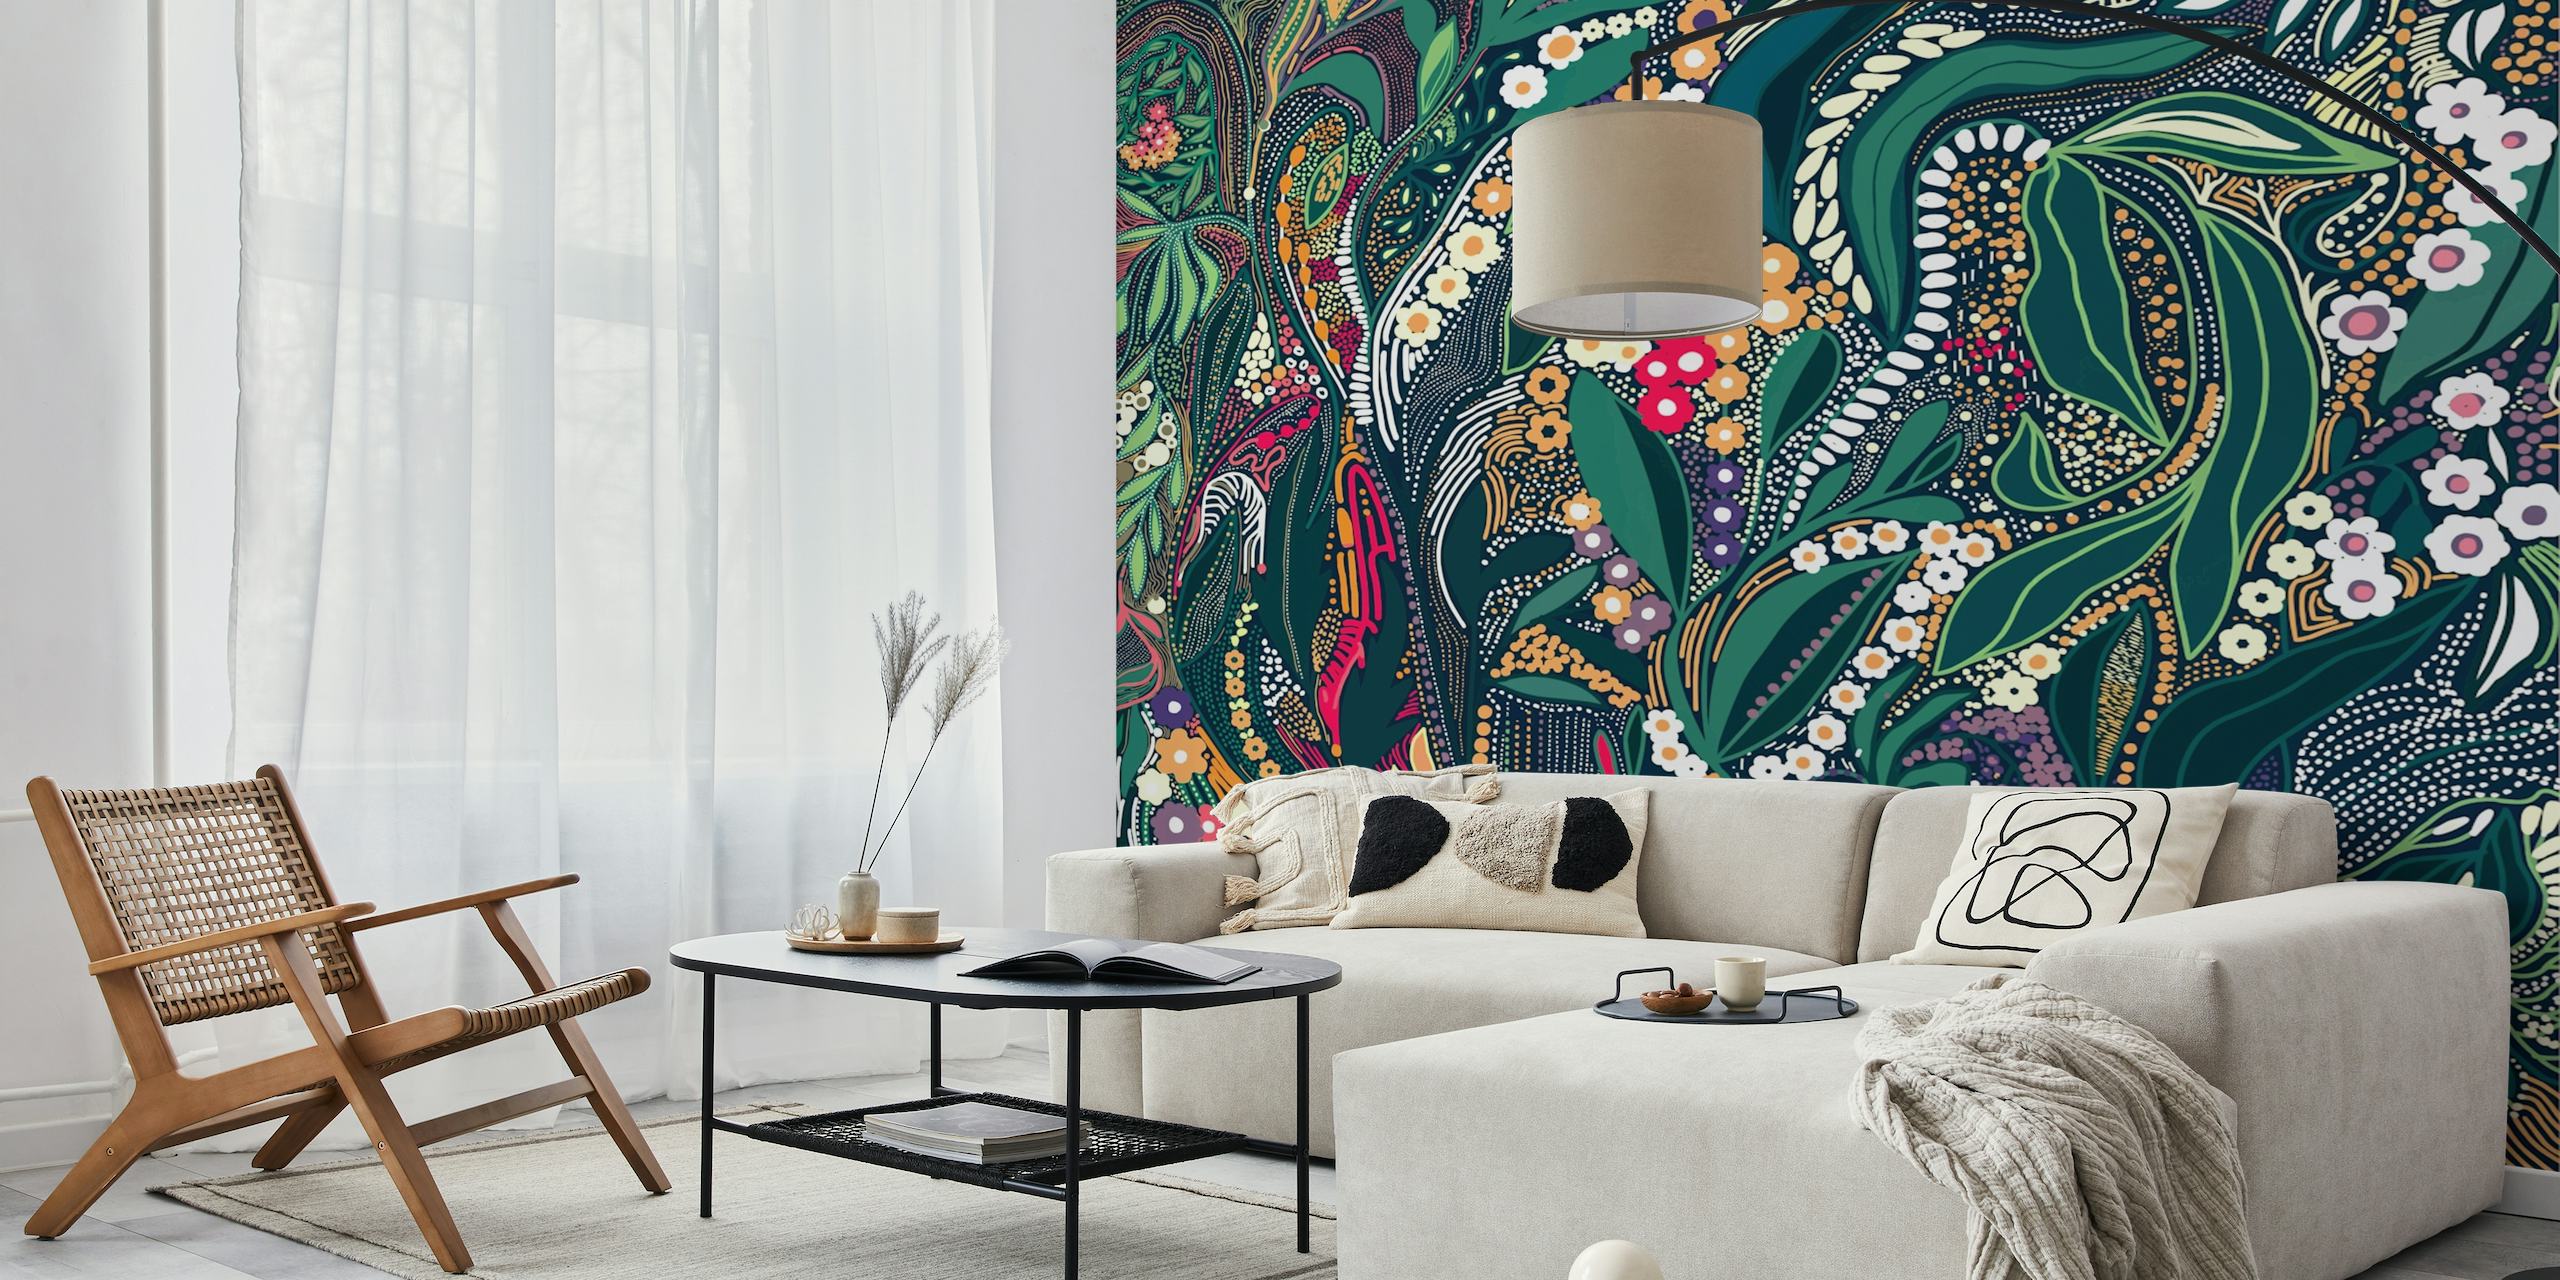 Mural de parede com um design intrincado de folhagens, flores e padrões em cores exuberantes.